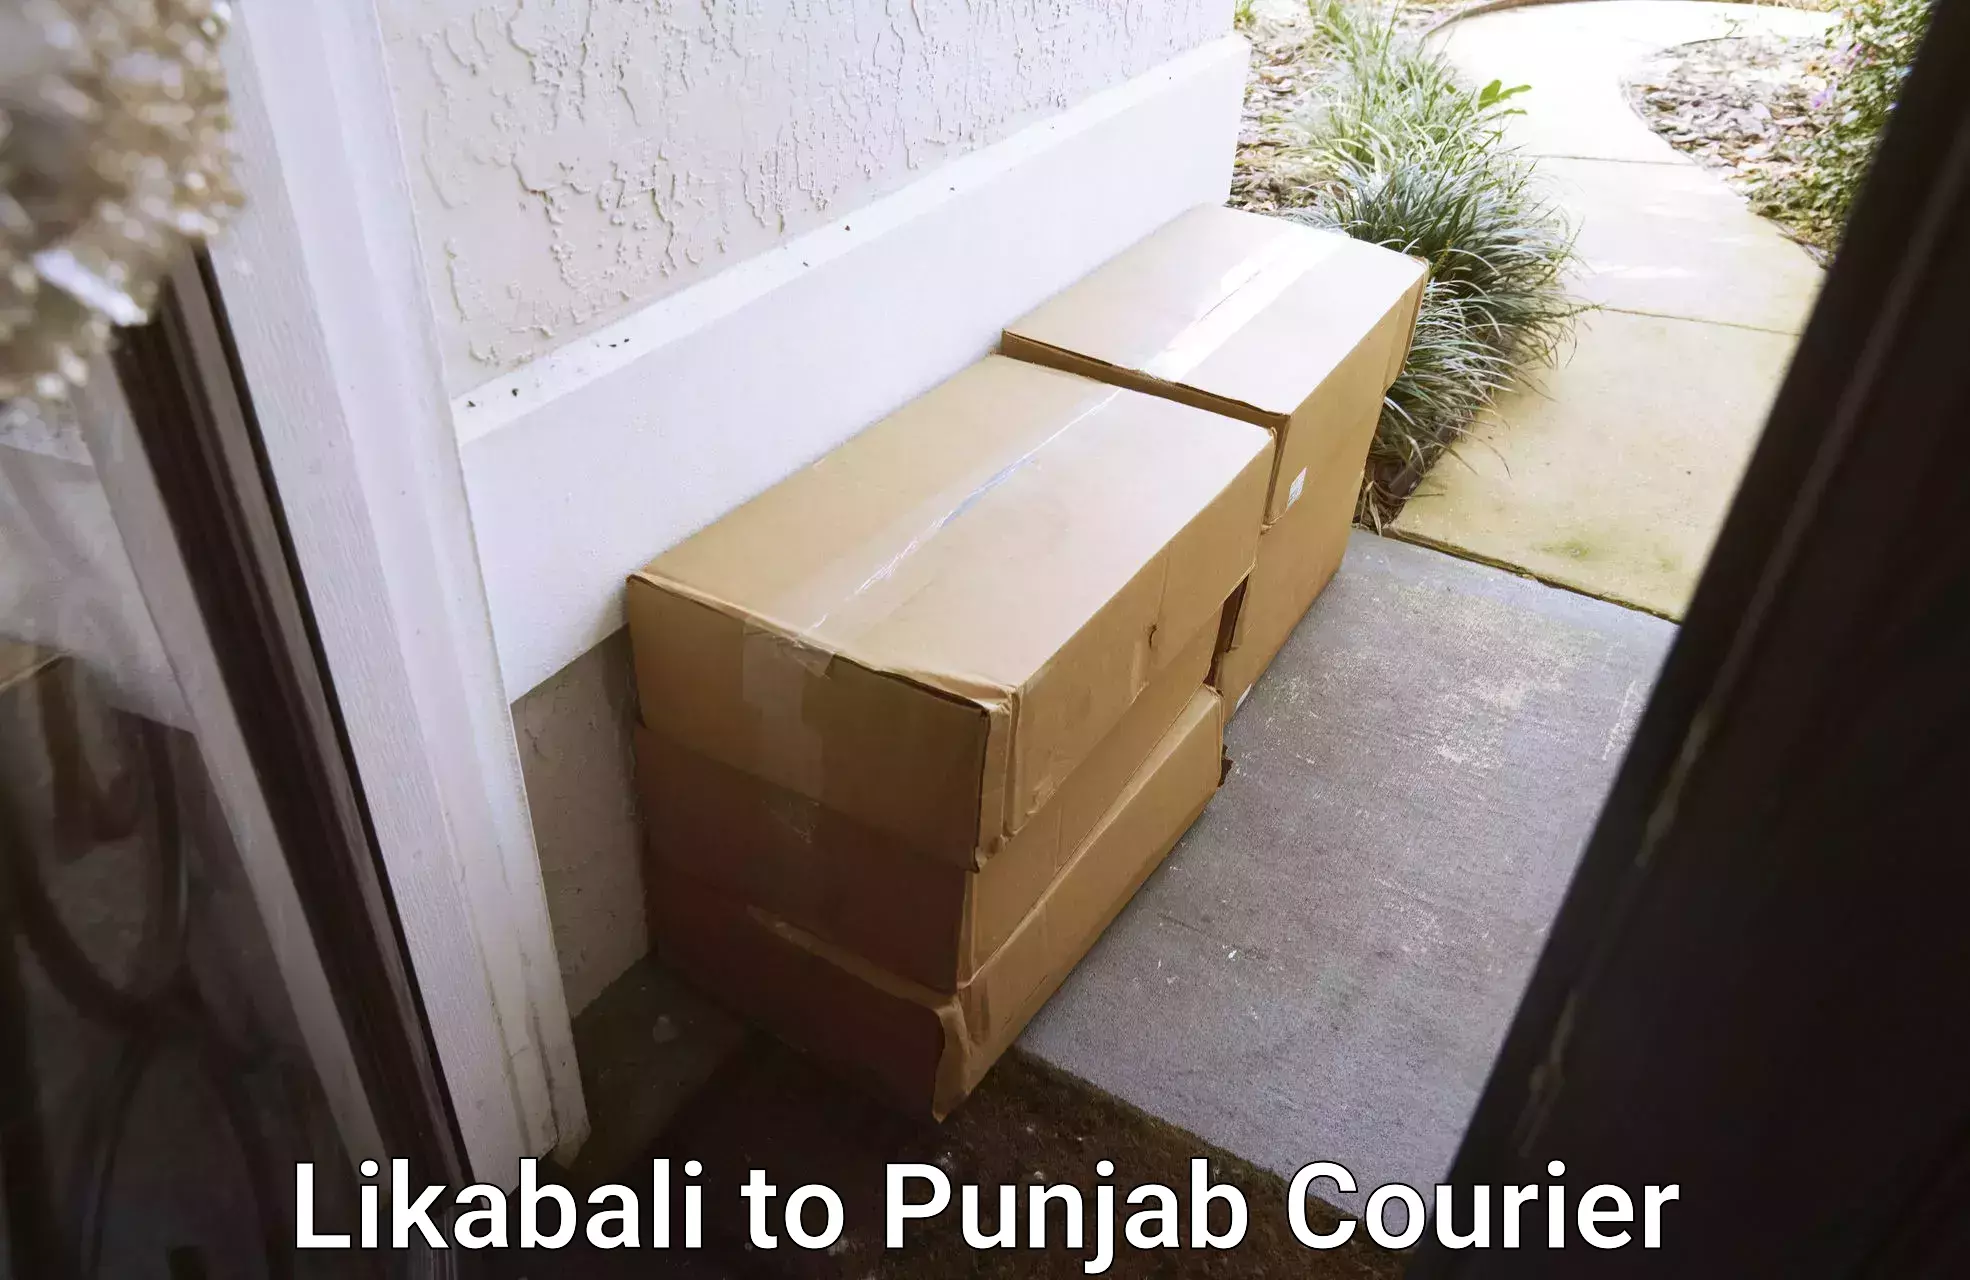 E-commerce shipping Likabali to Central University of Punjab Bathinda